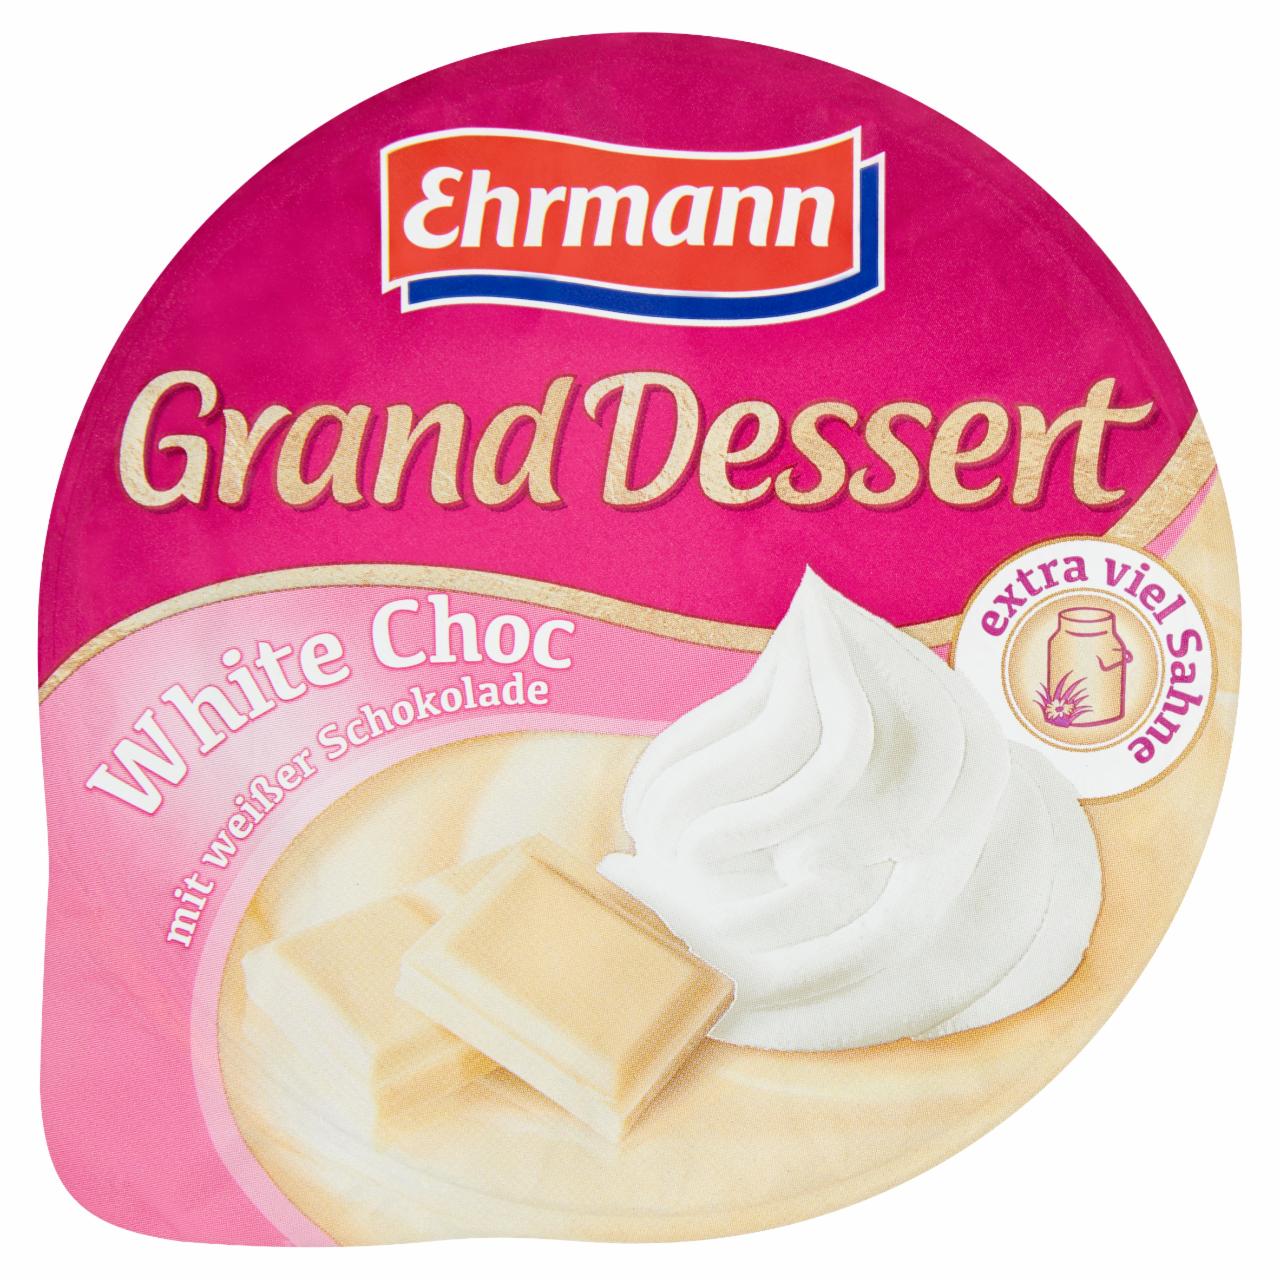 Képek - Ehrmann Grand Dessert fehér csokoládé ízű puding tejszínhabbal 190 g